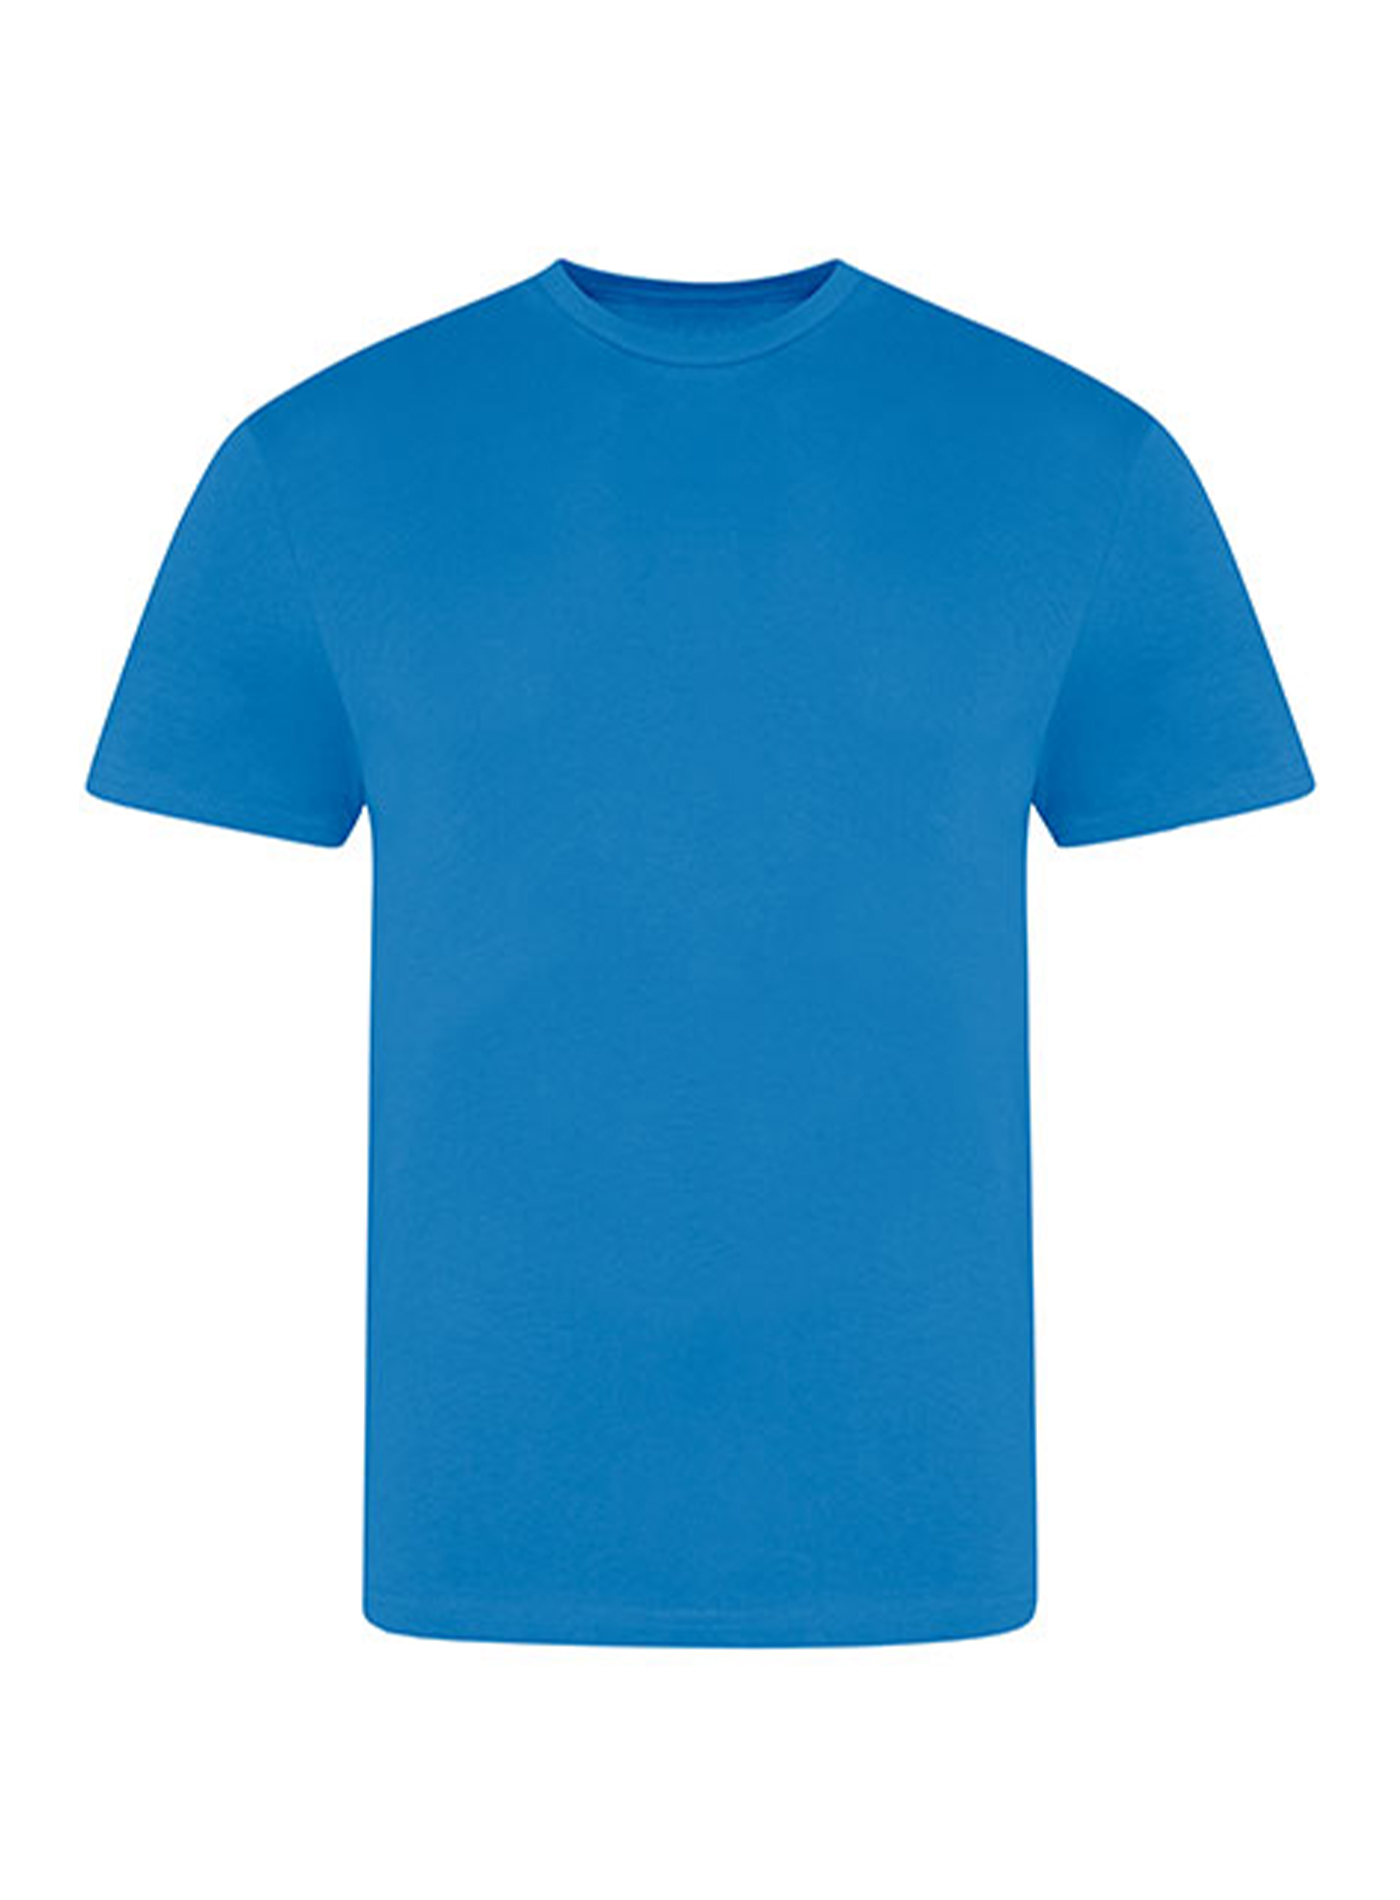 Pánské tričko Just Ts - Azurová XL